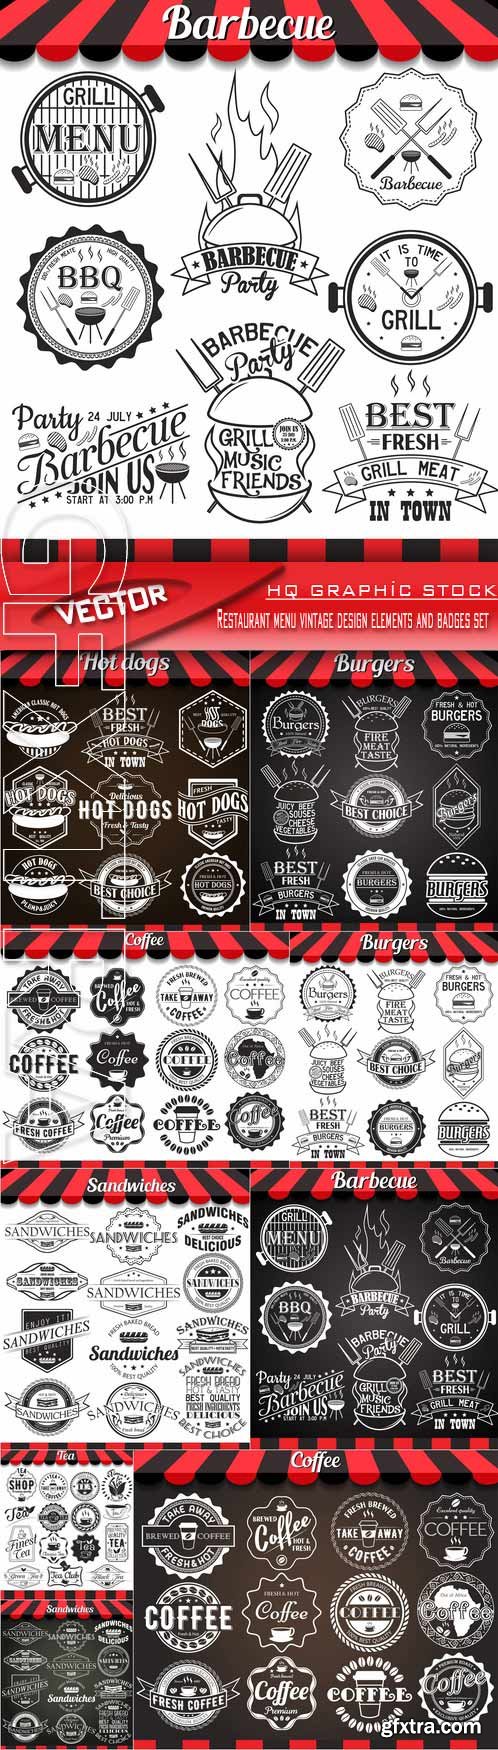 Stock Vector - Restaurant menu vintage design elements and badges set